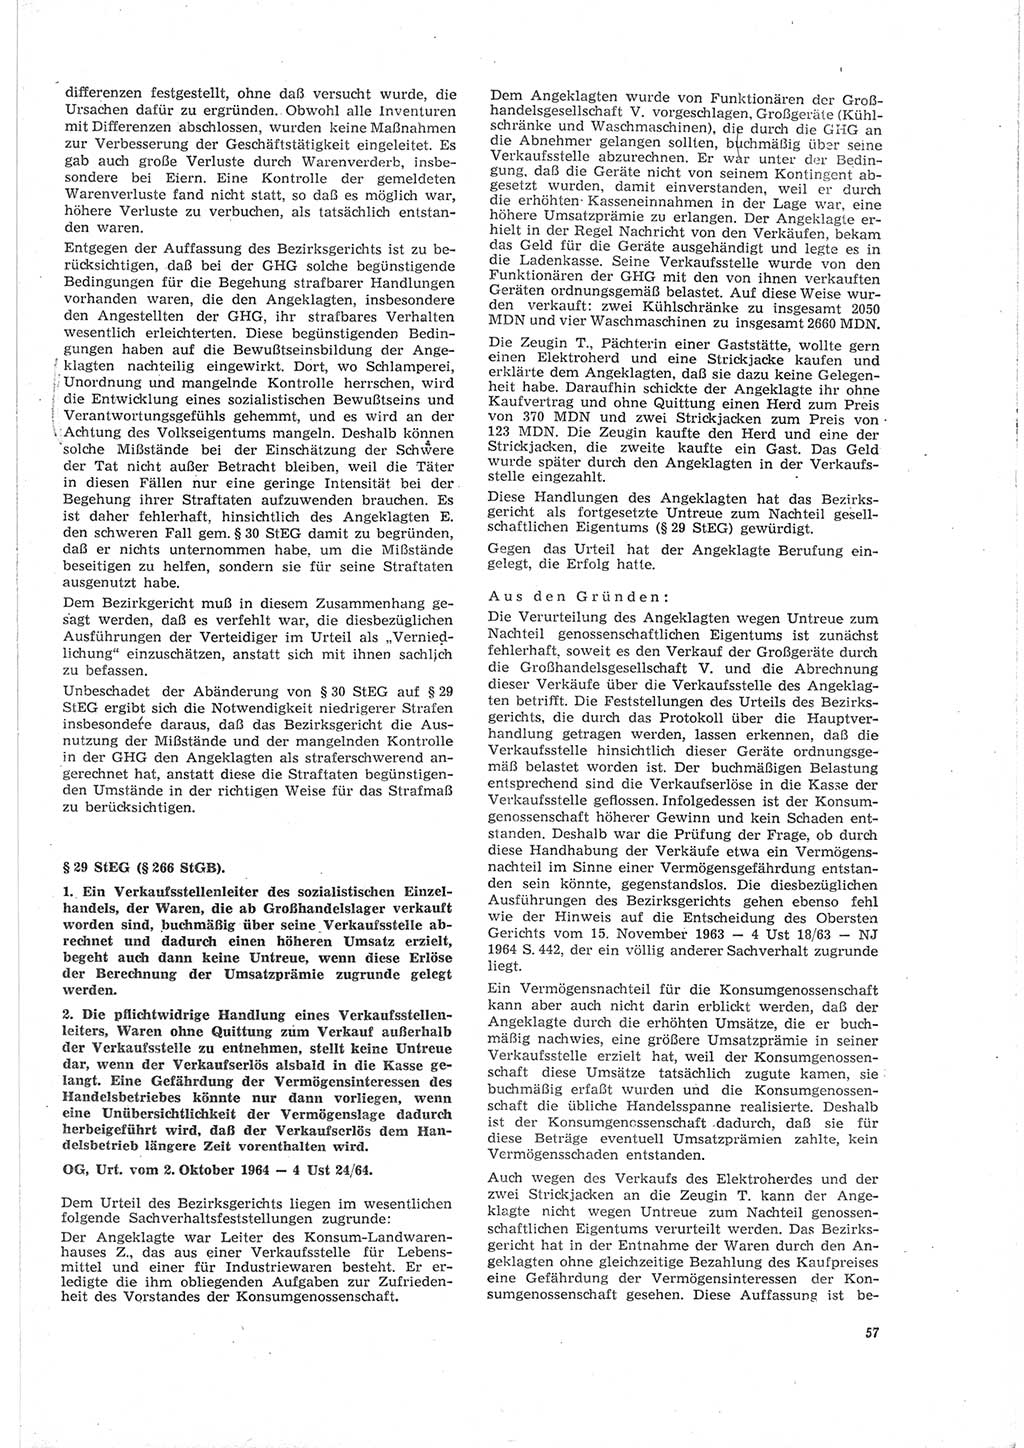 Neue Justiz (NJ), Zeitschrift für Recht und Rechtswissenschaft [Deutsche Demokratische Republik (DDR)], 19. Jahrgang 1965, Seite 57 (NJ DDR 1965, S. 57)